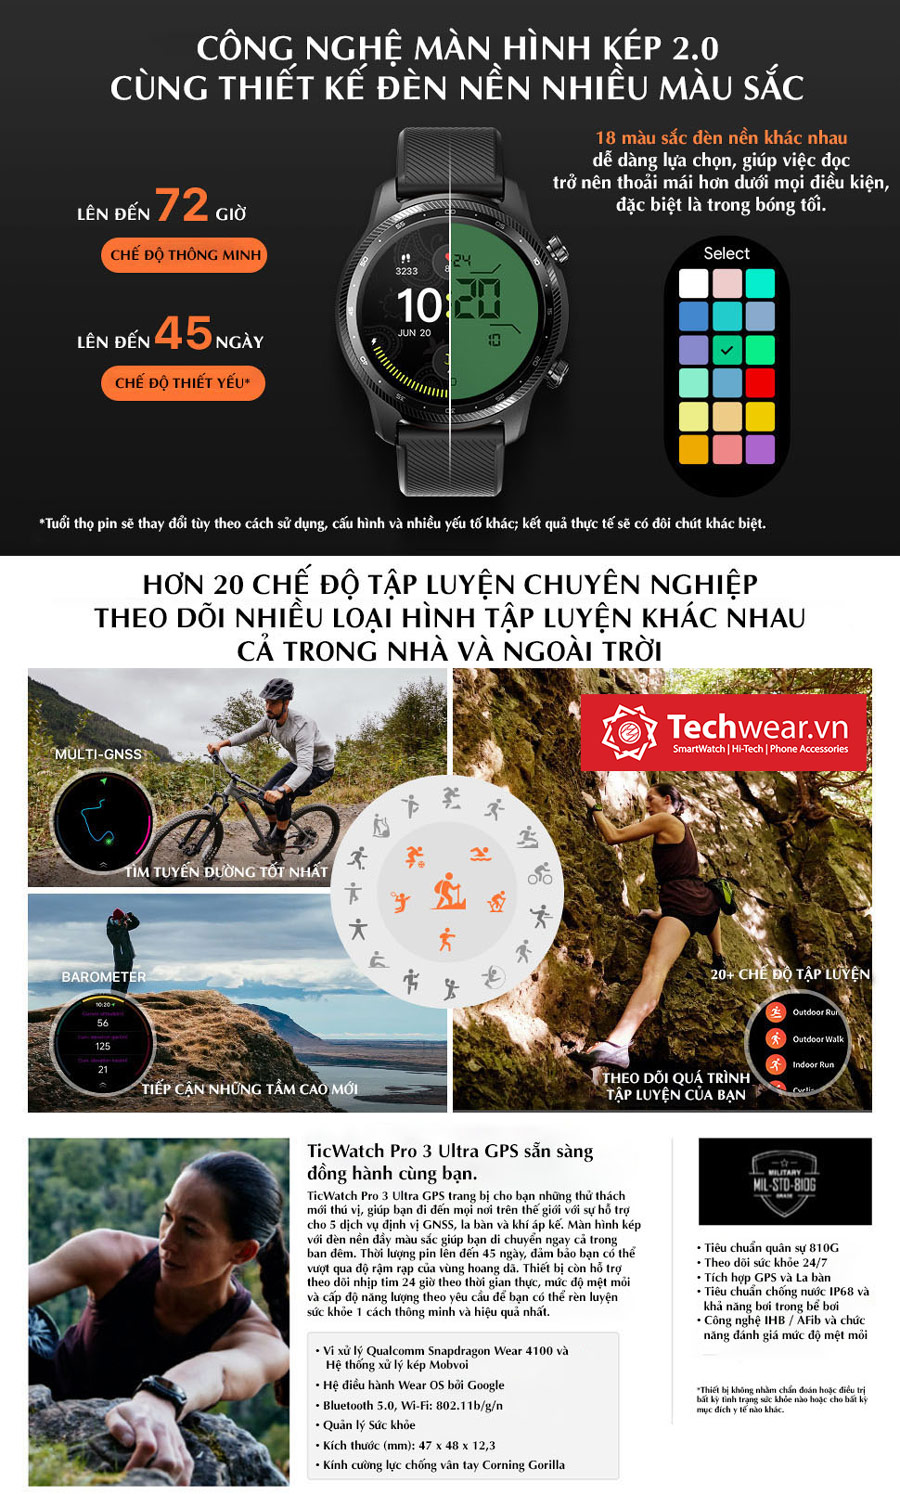 Techwear.vn- đại lý uỷ quyền Ticwatch Chính hãng